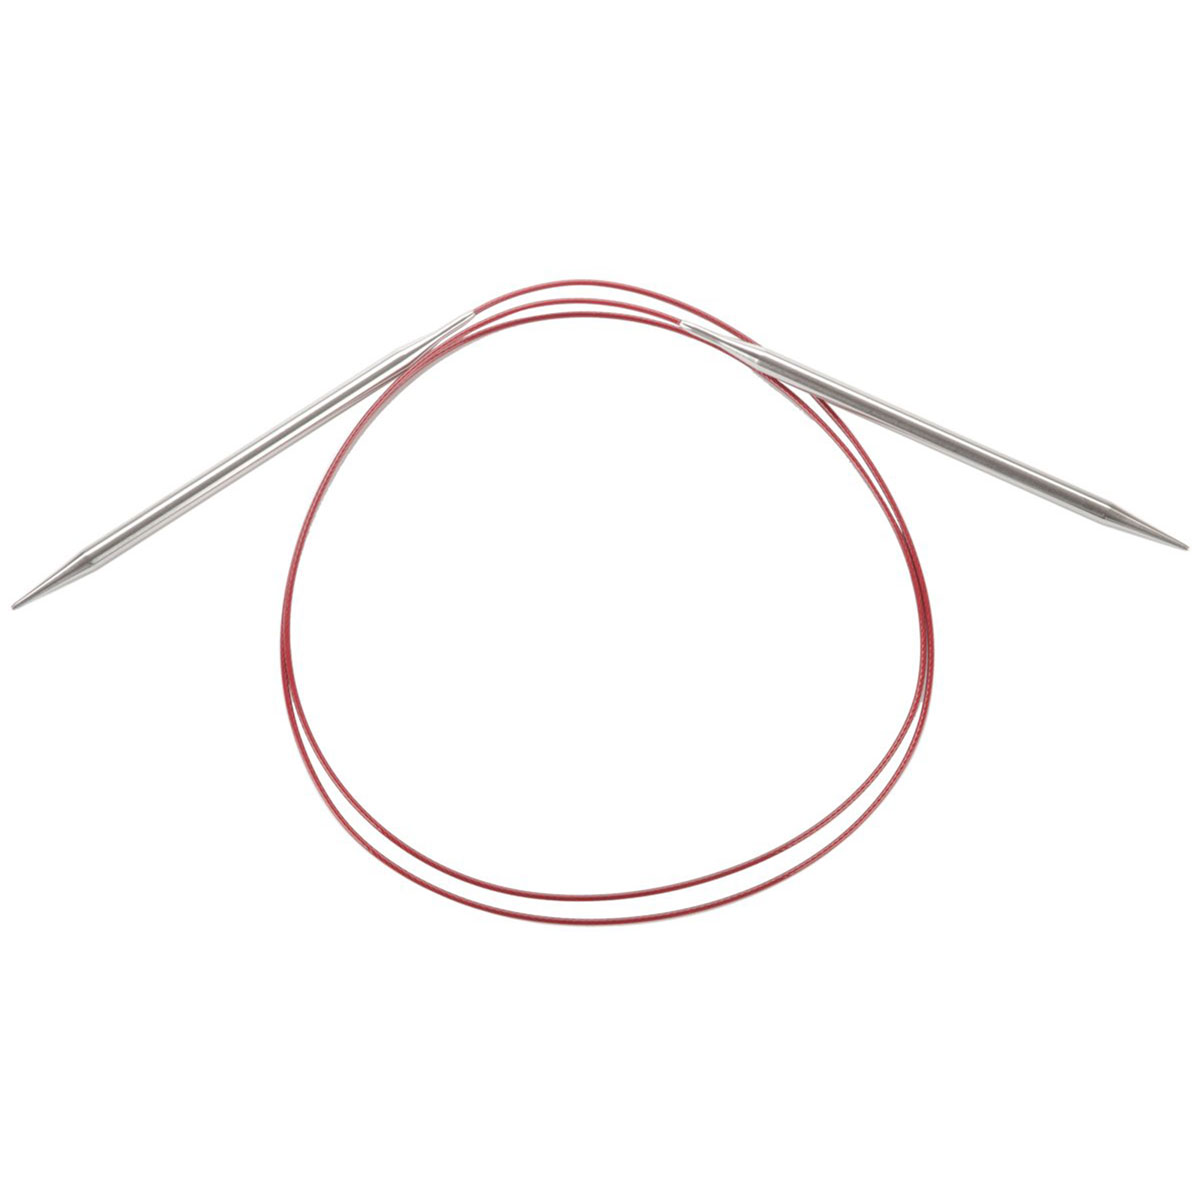 ChiaoGoo Knit RED Circular Needles - US 7 (4.5mm) - 9 Needles at Jimmy  Beans Wool